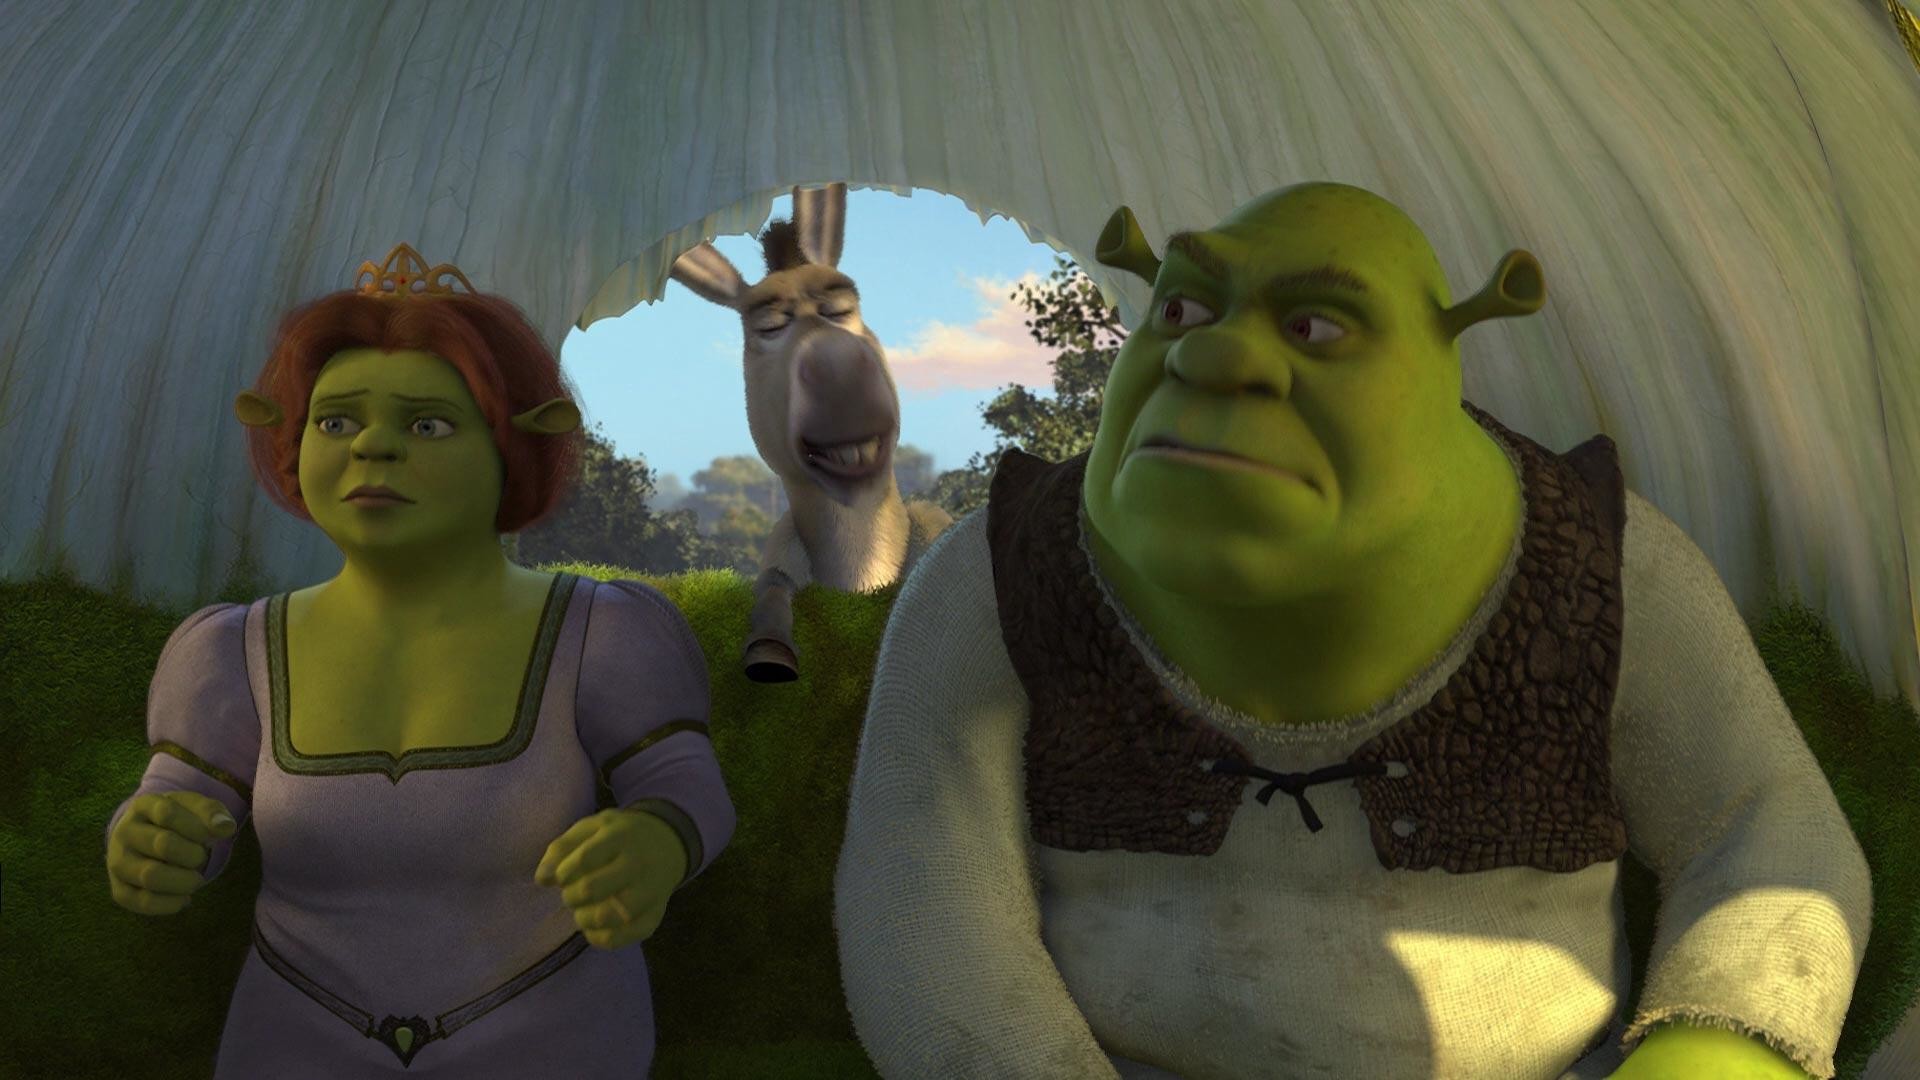 Trans Allegories in Film: ‘Shrek’ (2001)